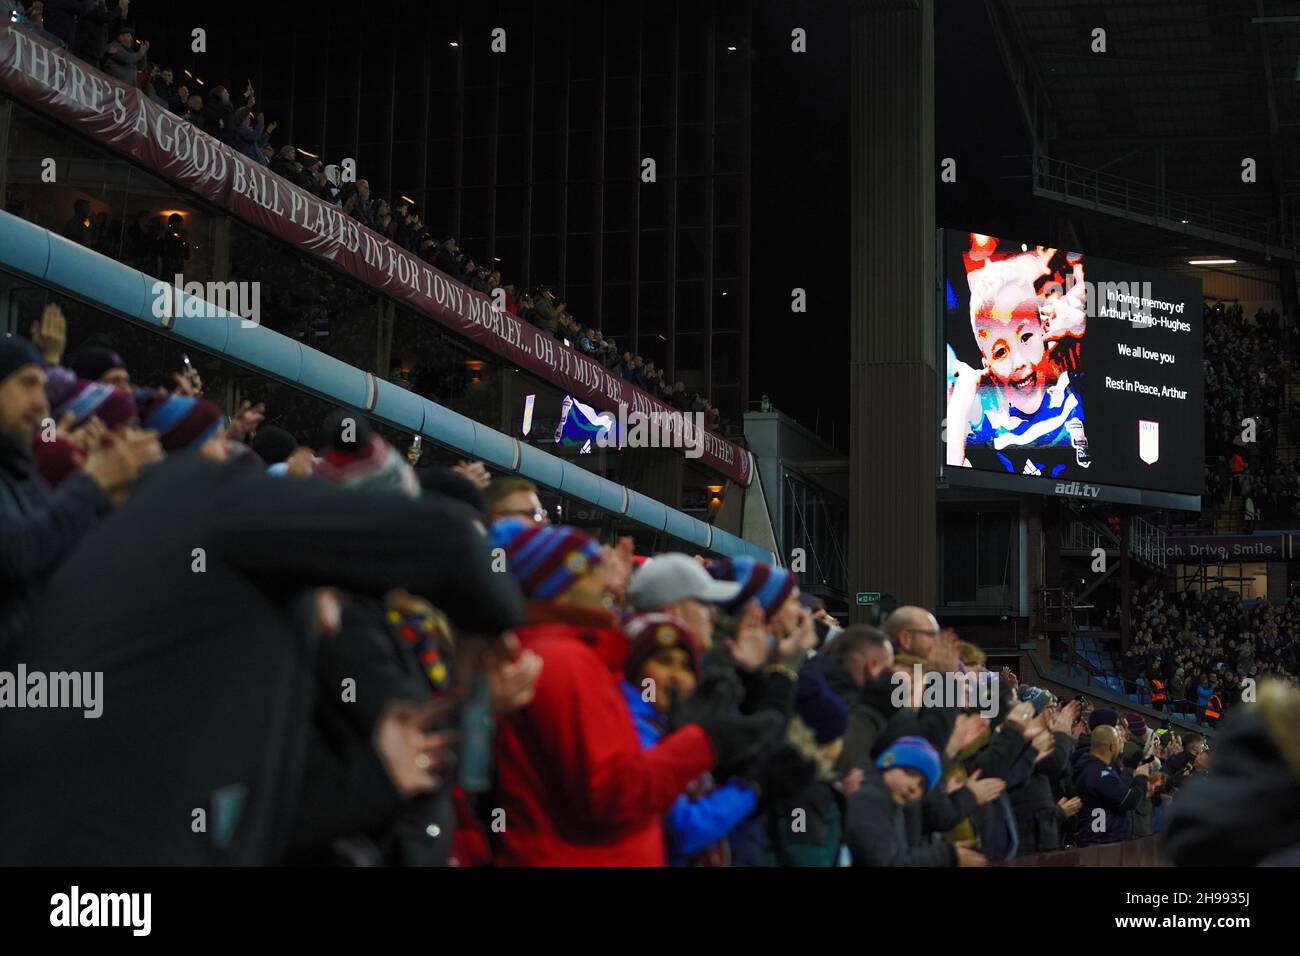 Die Fans applaudieren während des Spiels der Premier League in Villa Park, Birmingham, zur sechs-Minuten-Marke in Erinnerung an Arthur Labinjo-Hughes. Bilddatum: Sonntag, 5. Dezember 2021. Stockfoto